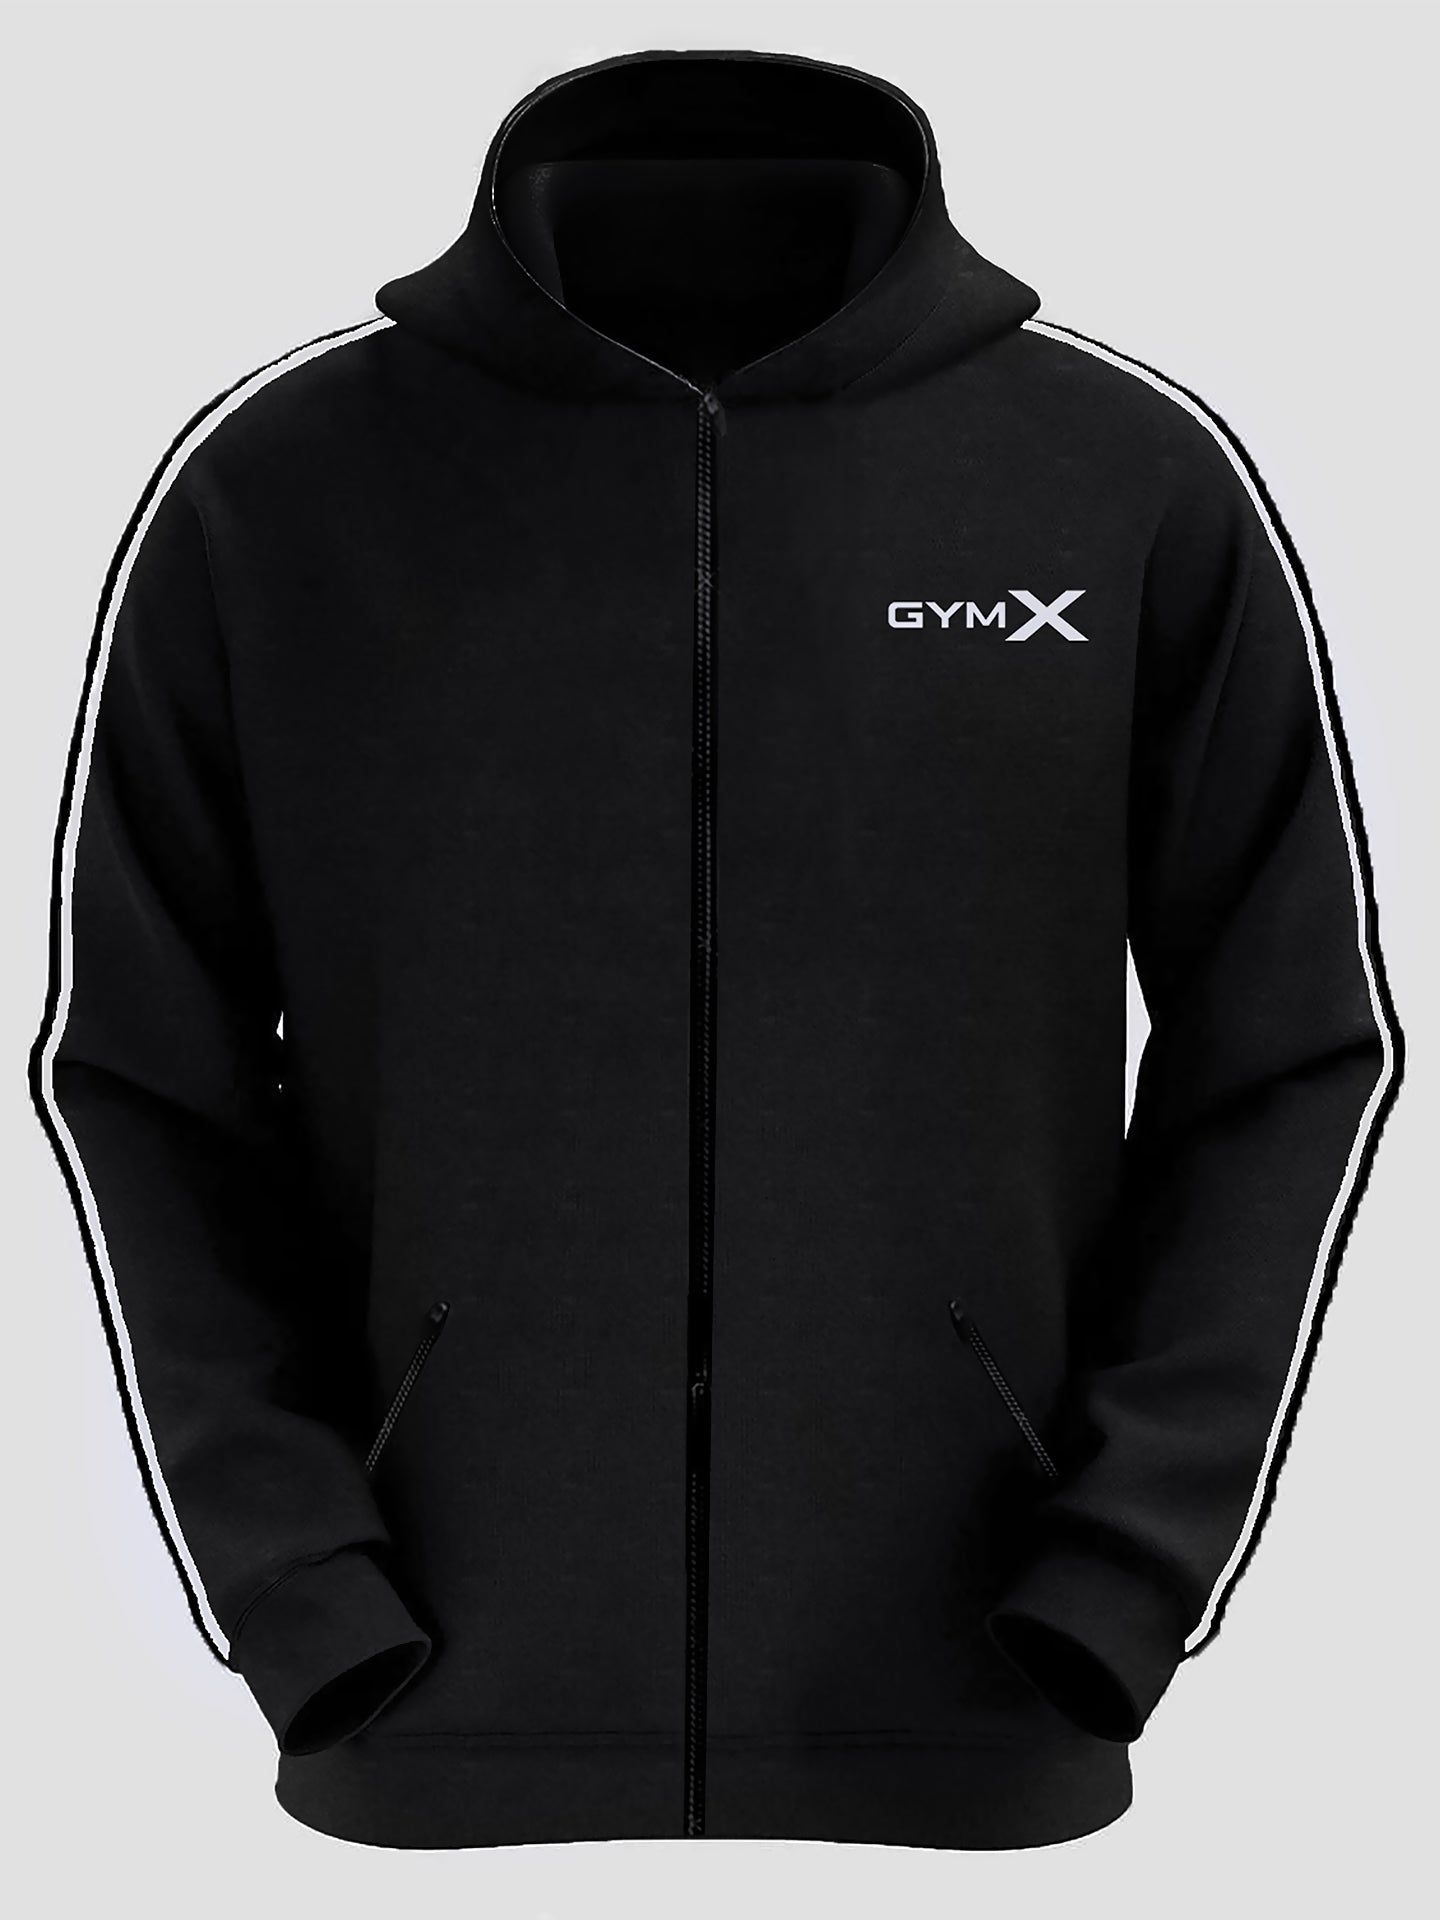 Venge Black GymX Hoodie- SALE